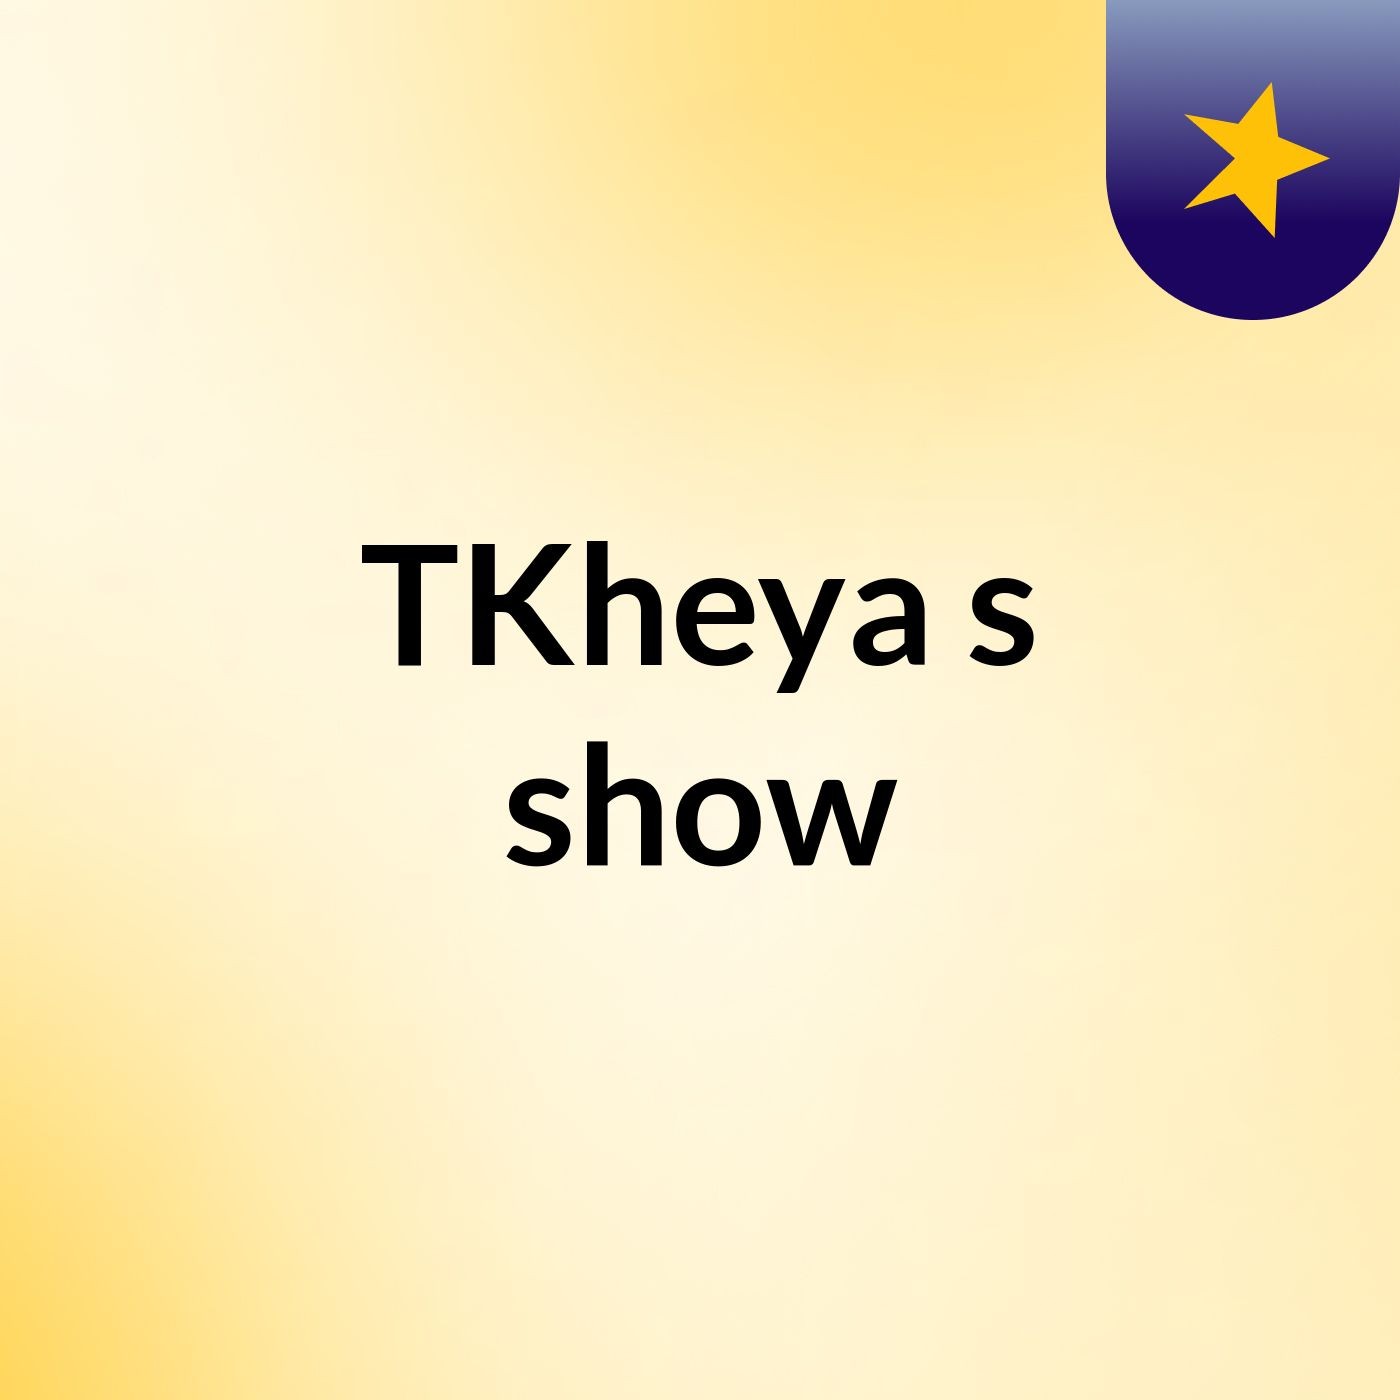 TKheya's show